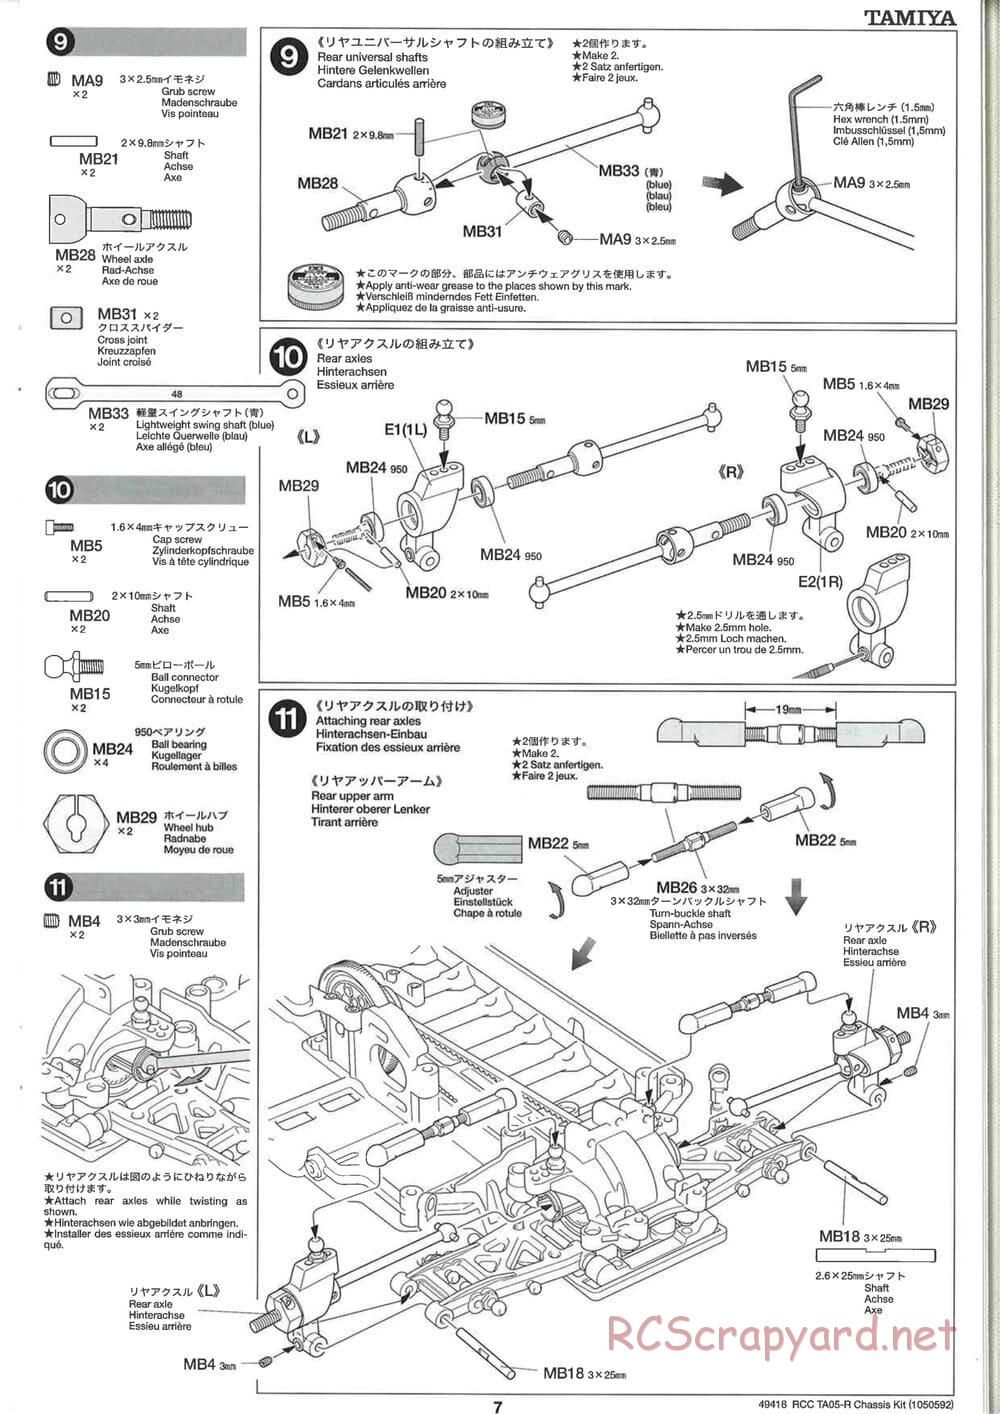 Tamiya - TA05-R Chassis - Manual - Page 7